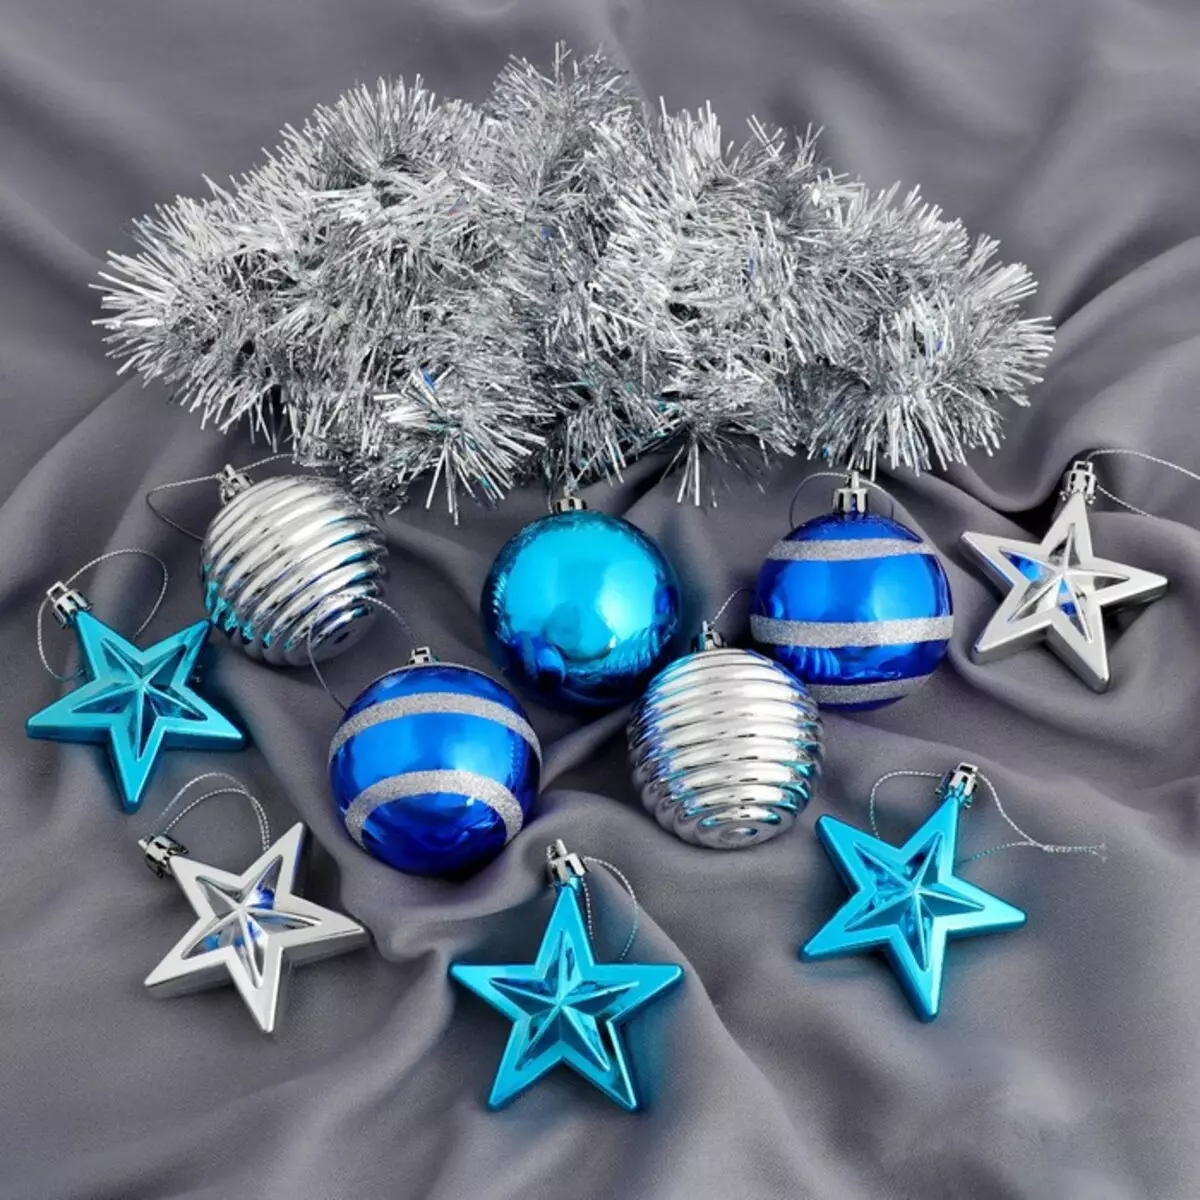 如何在蓝色银色颜色装饰圣诞树？ 30张照片如何打扮球和其他装饰在蓝色和银色的色调？ 7627_20